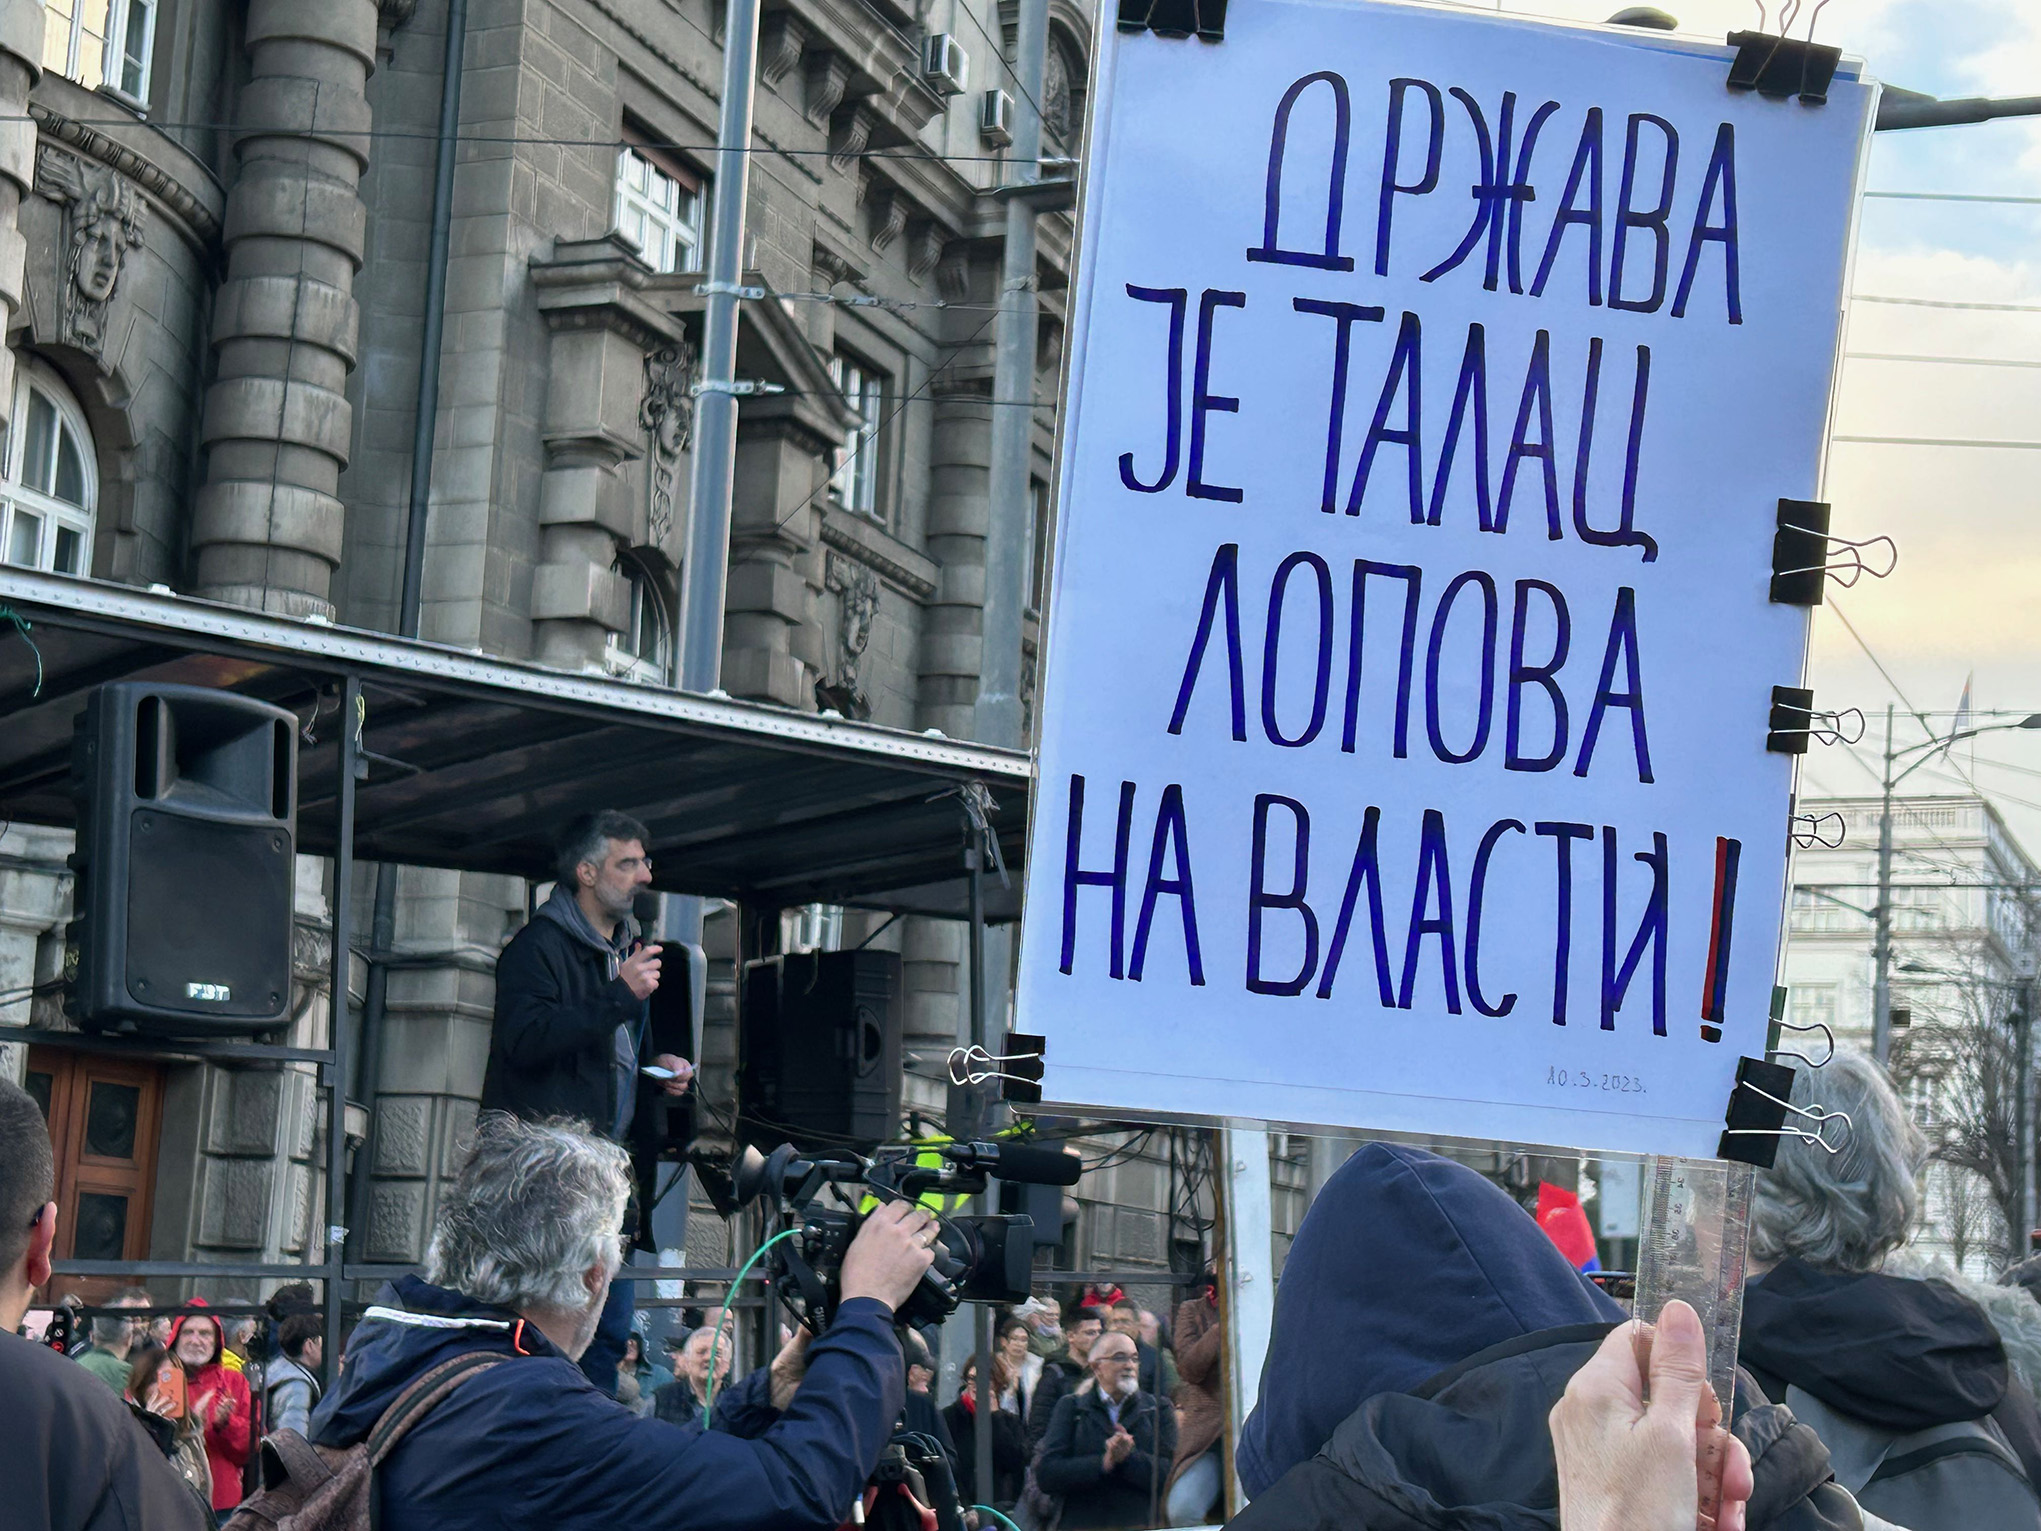 "Lo stato è ostaggio dei ladri al potere!", Belgrado, marzo 2023 (foto M. Moratti)